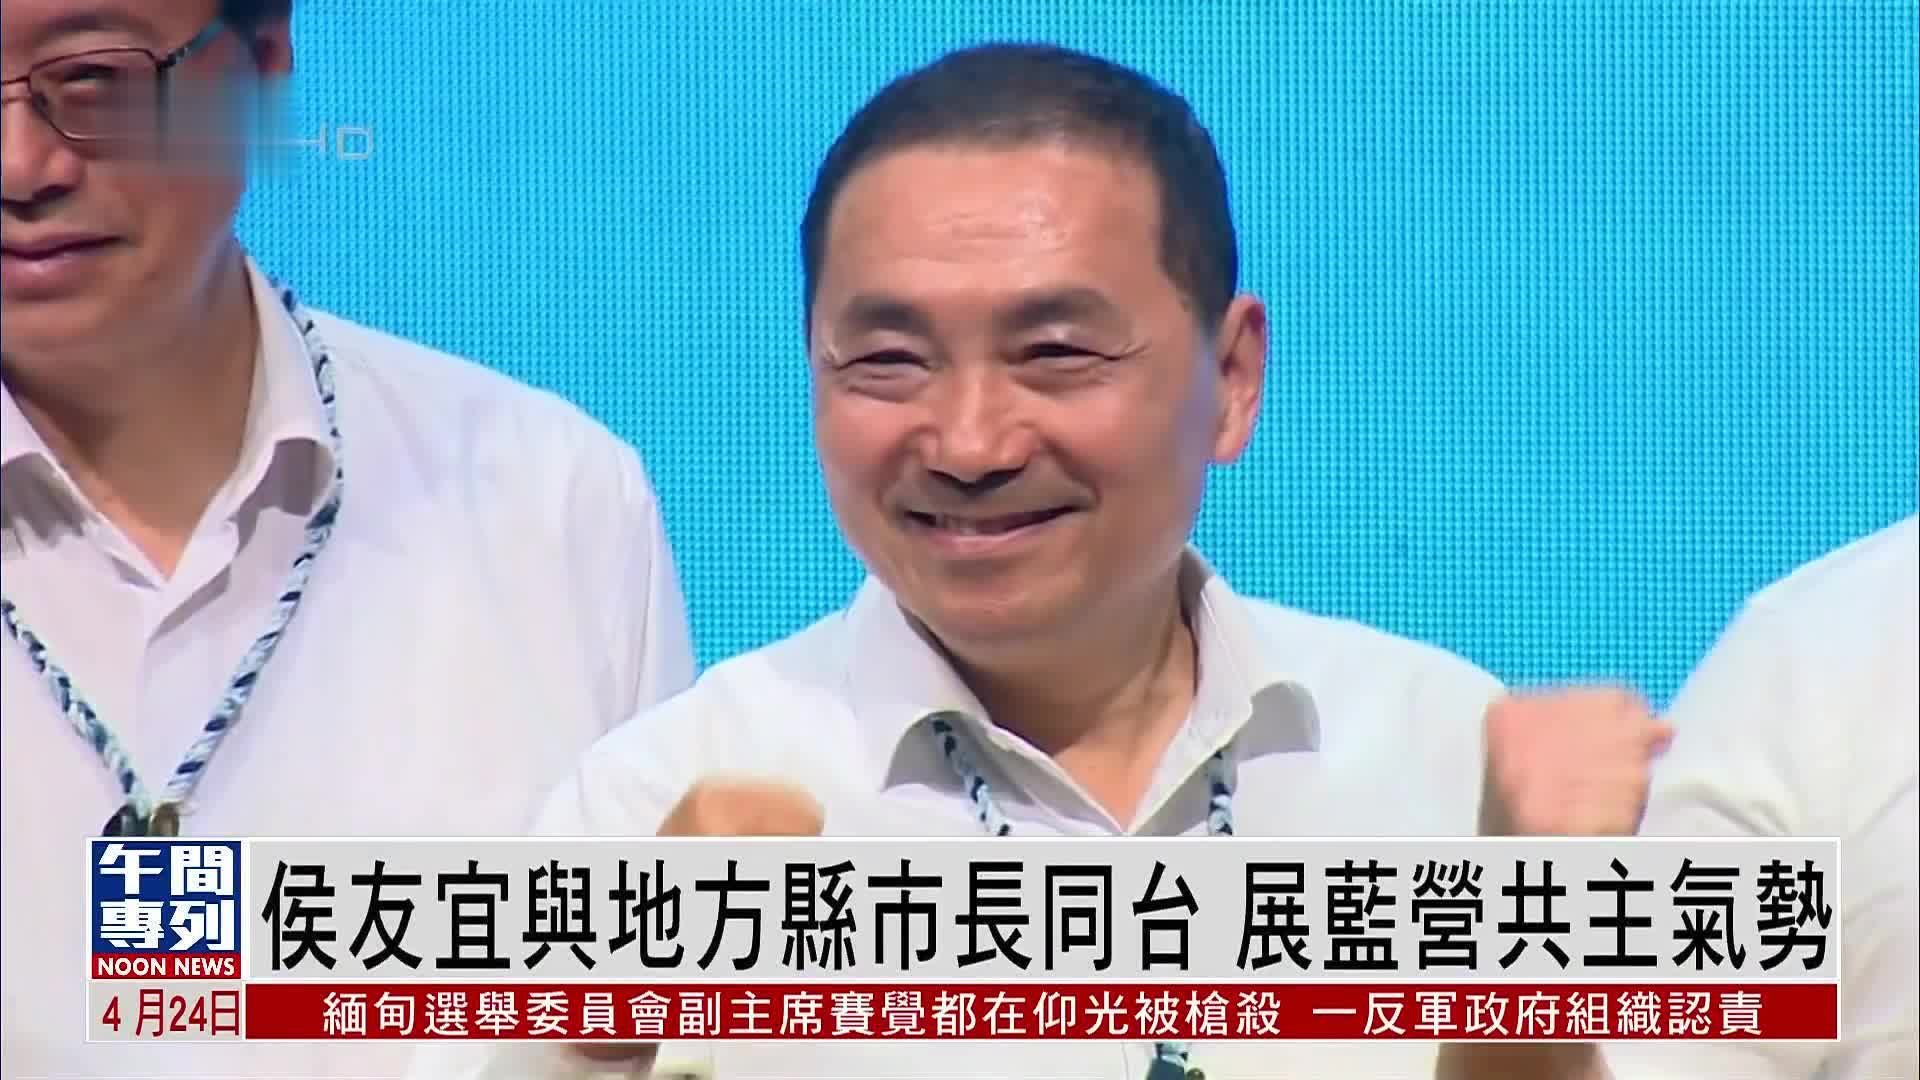 侯友宜与台湾地方县市长同台 展国民党共主气势